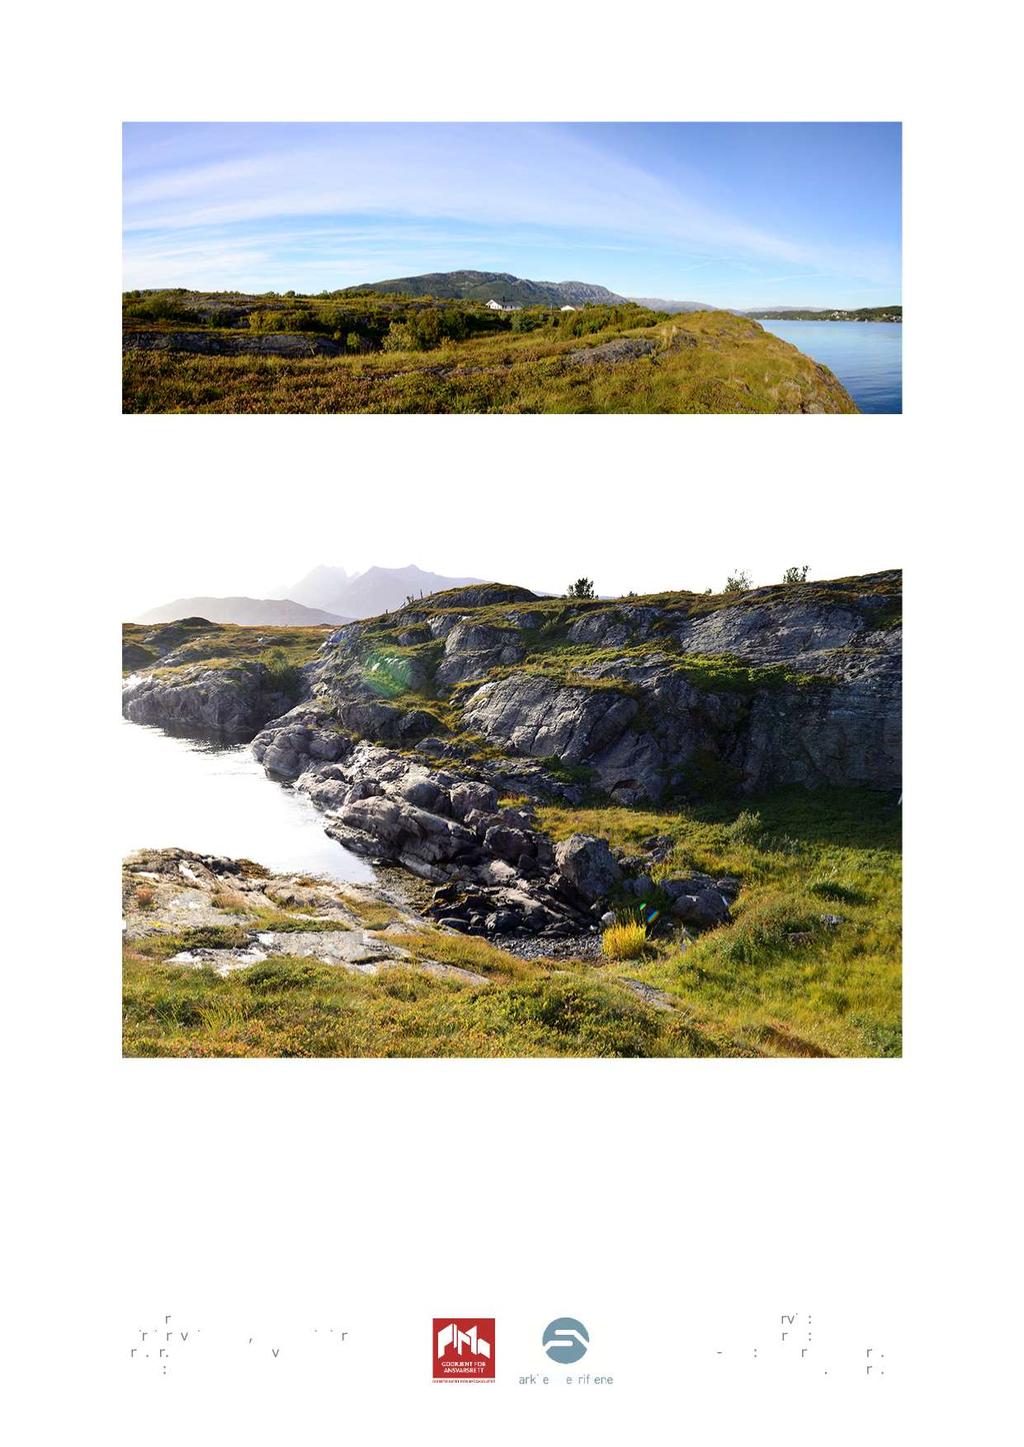 Bilde 1 2. Bildet viser området fra Hestvika og innover nederste åskam og innmarksbeite. Eksisterende hytter ses til høyre for midten av bildet.